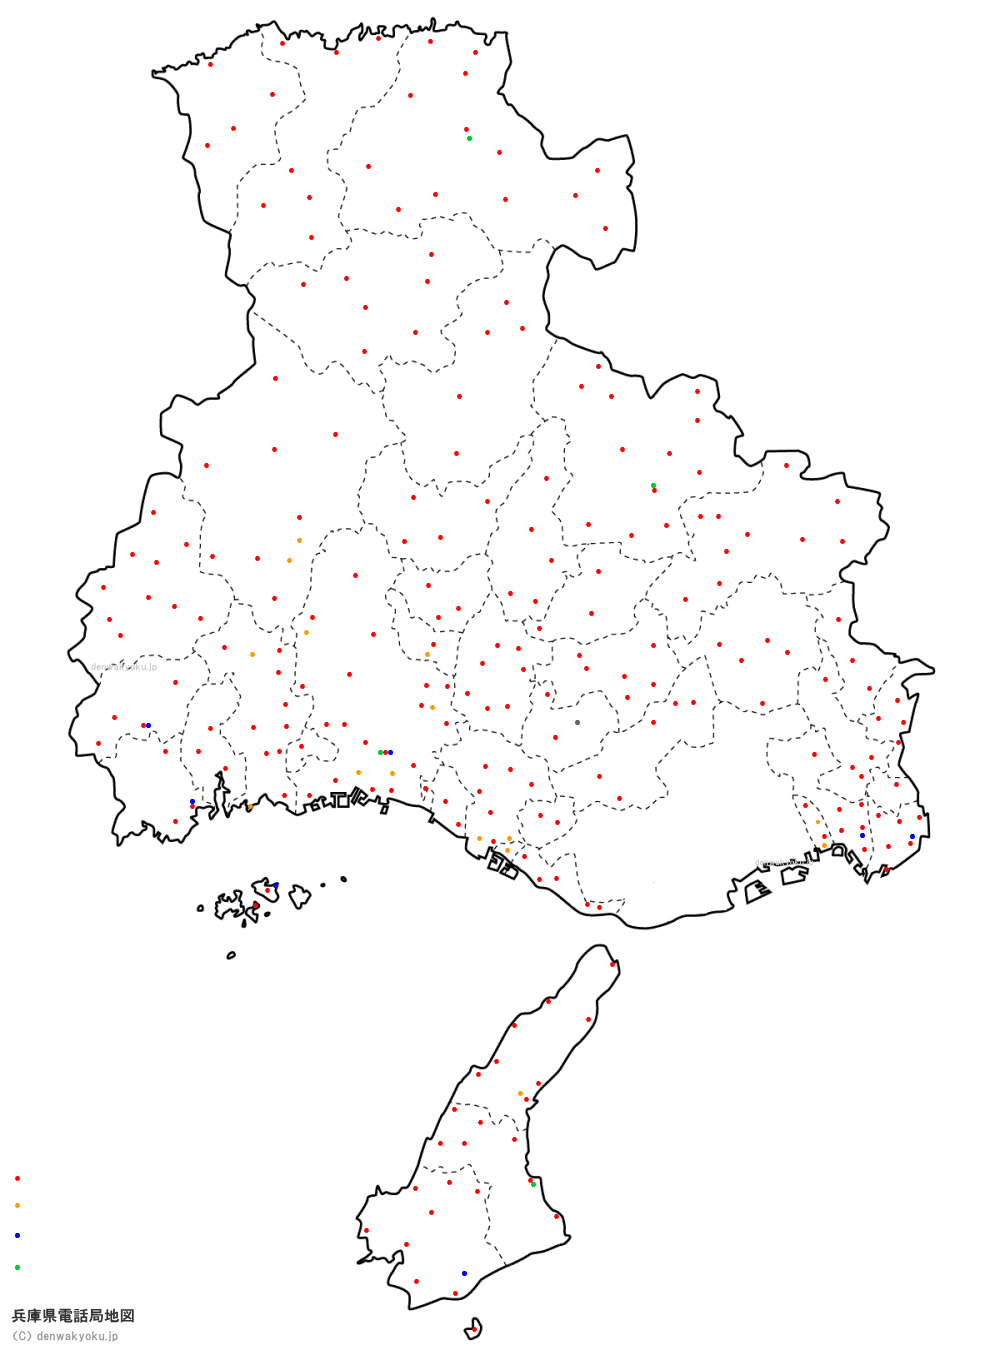 兵庫県電話局地図（NTT収容局マップ）